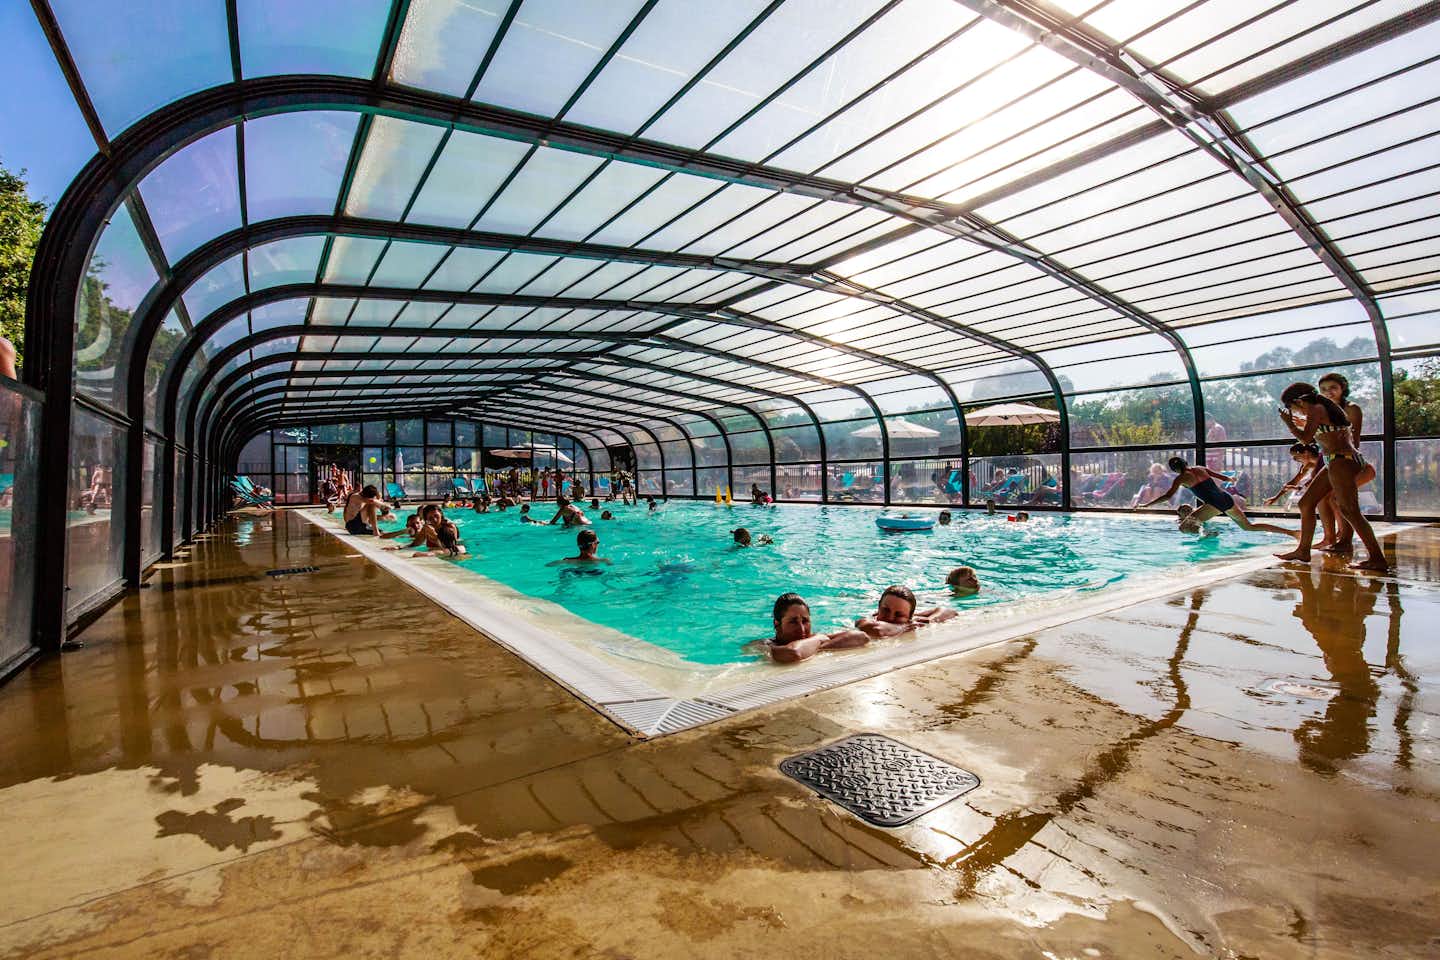 Le Domaine de Bréhadour - Gäste und Kinder schwimmen im Pool in der Glashalle 